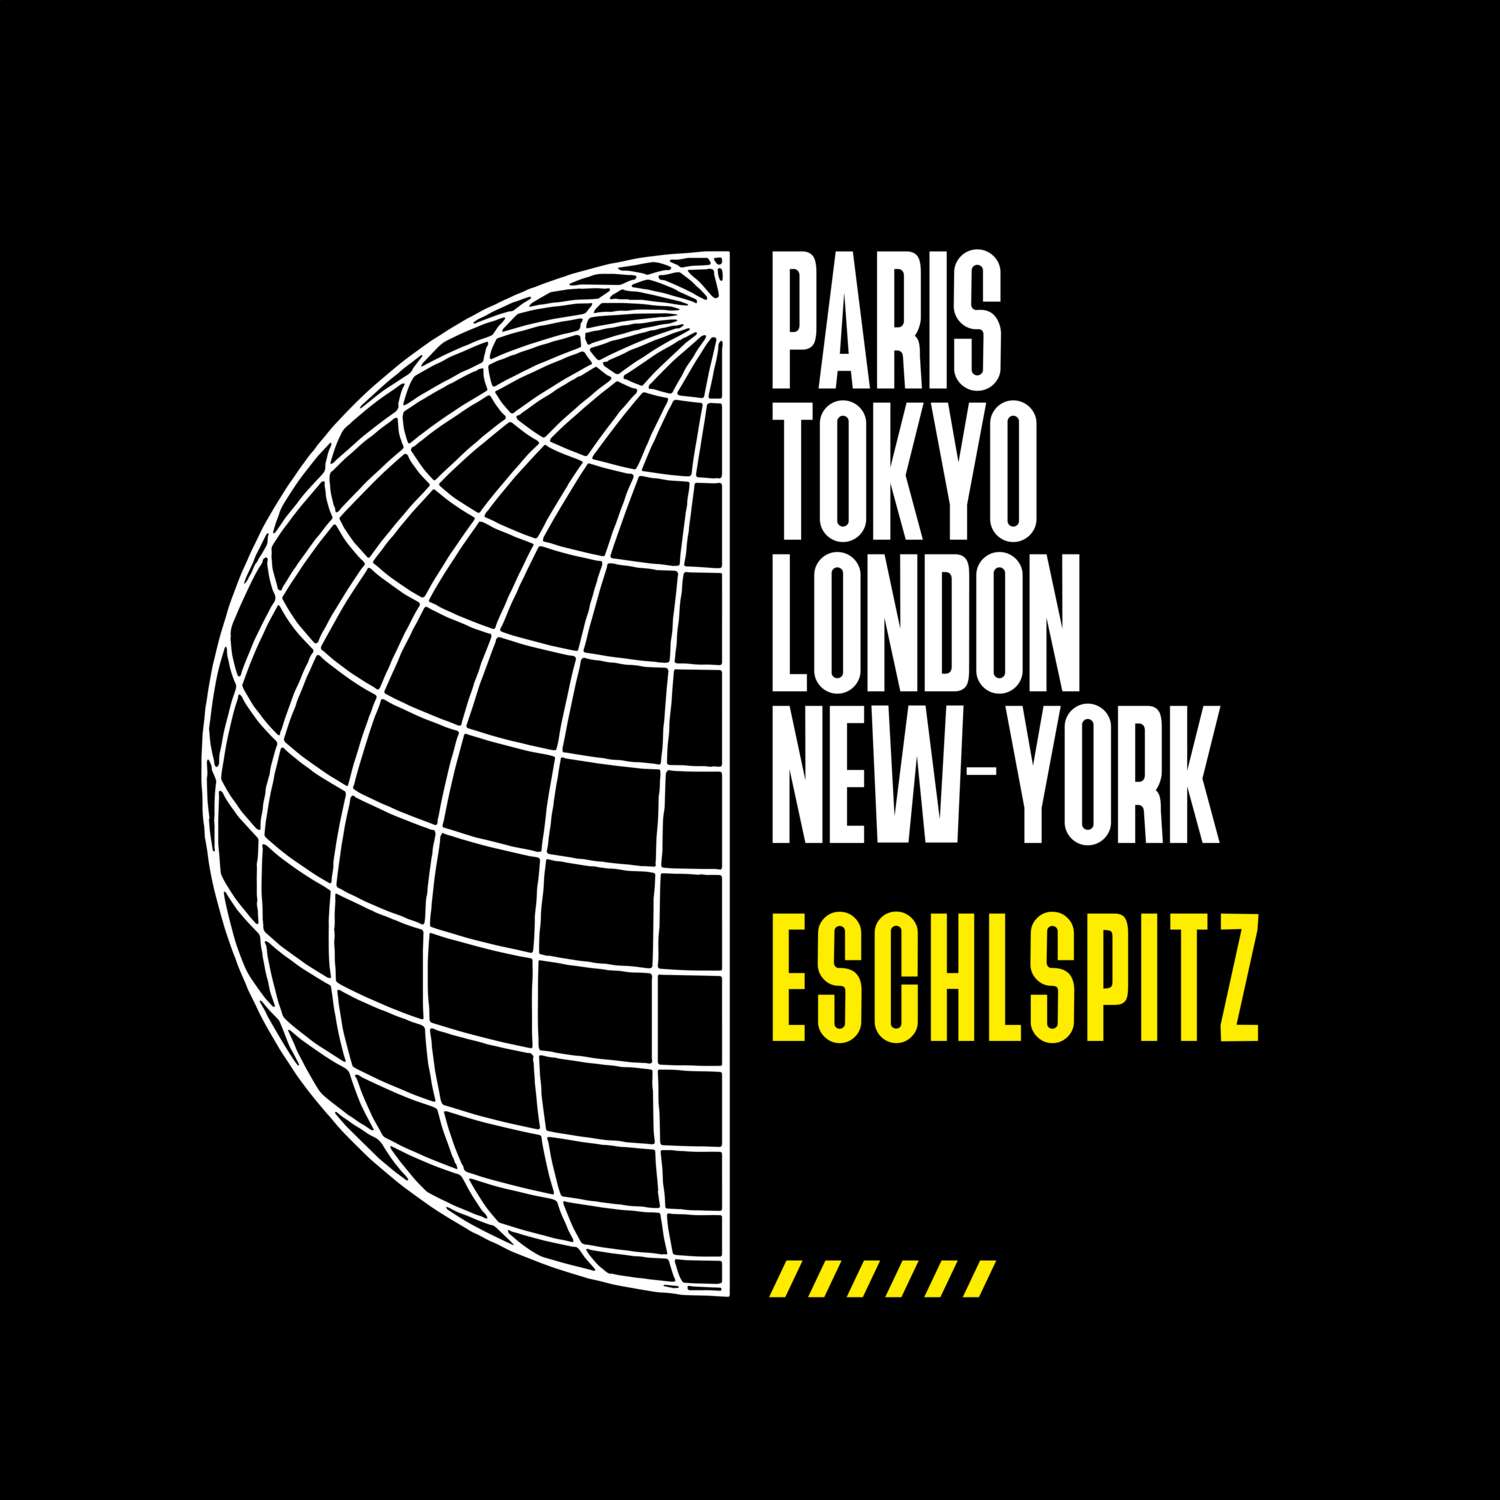 Eschlspitz T-Shirt »Paris Tokyo London«